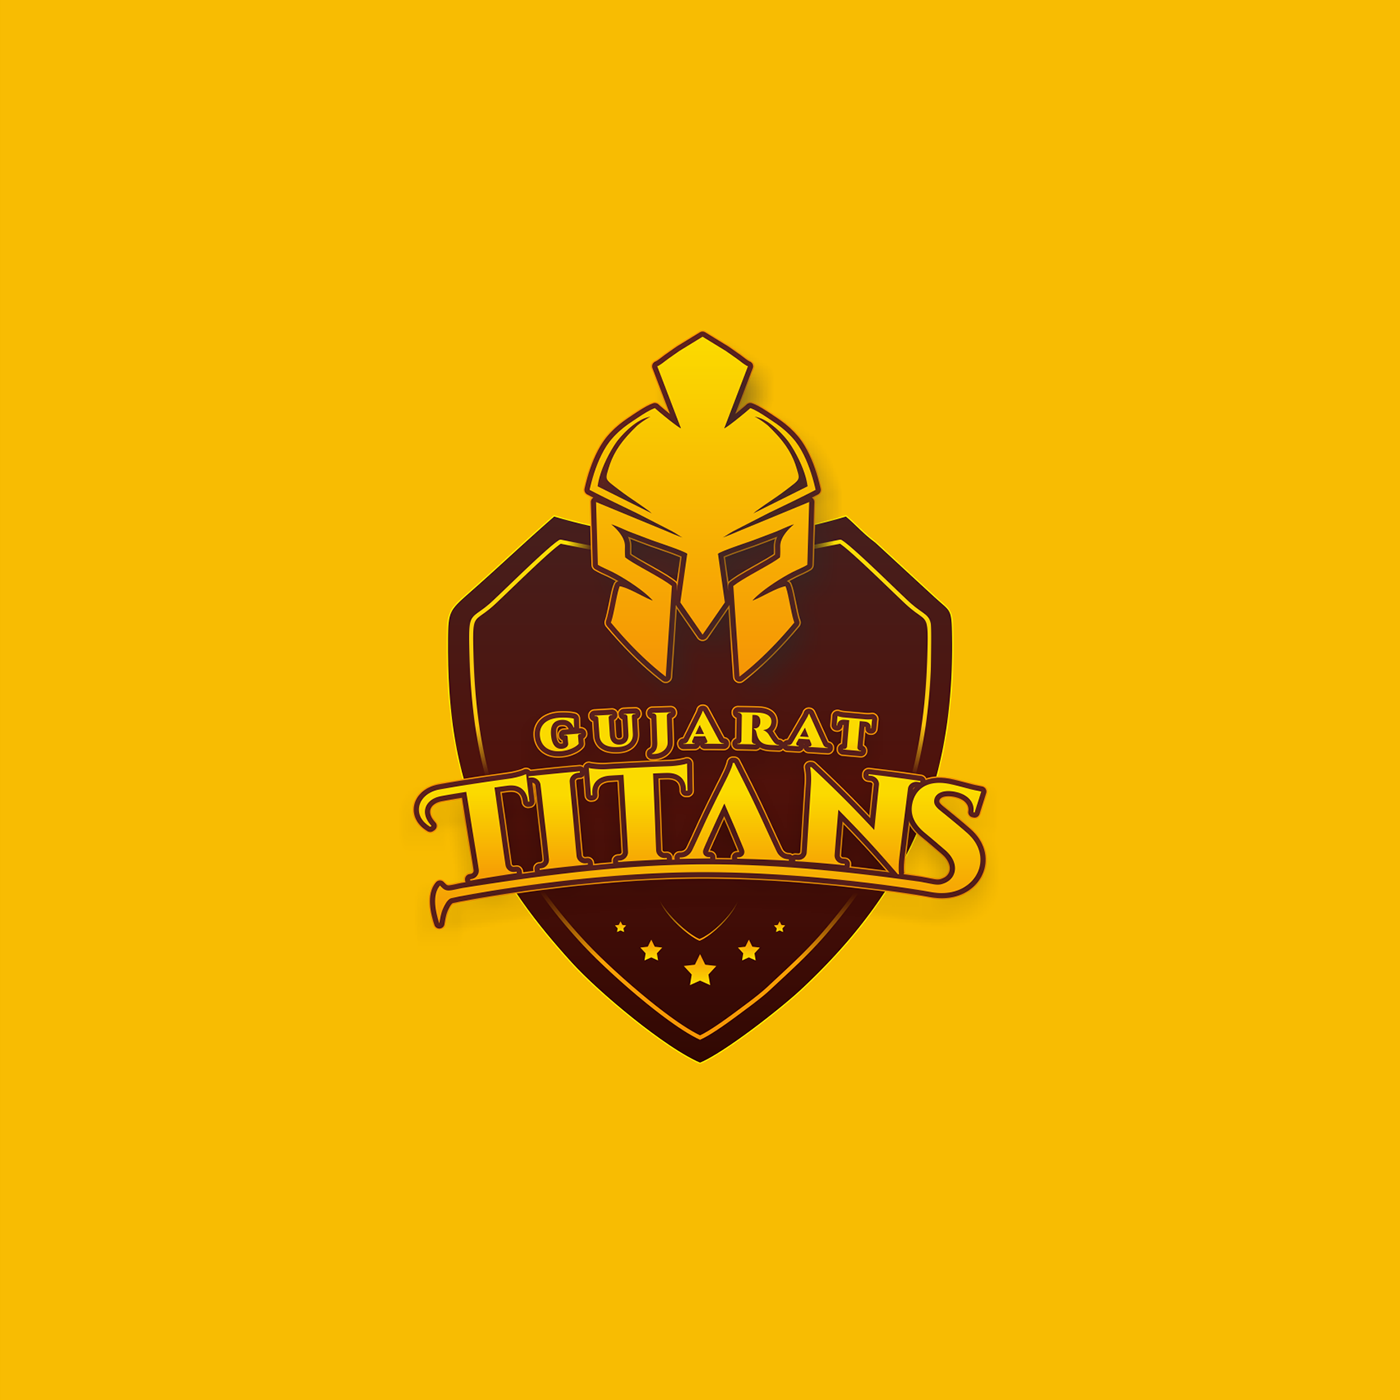 Gujarat Titans Logo Ipl 2022 By Rahul Visuals